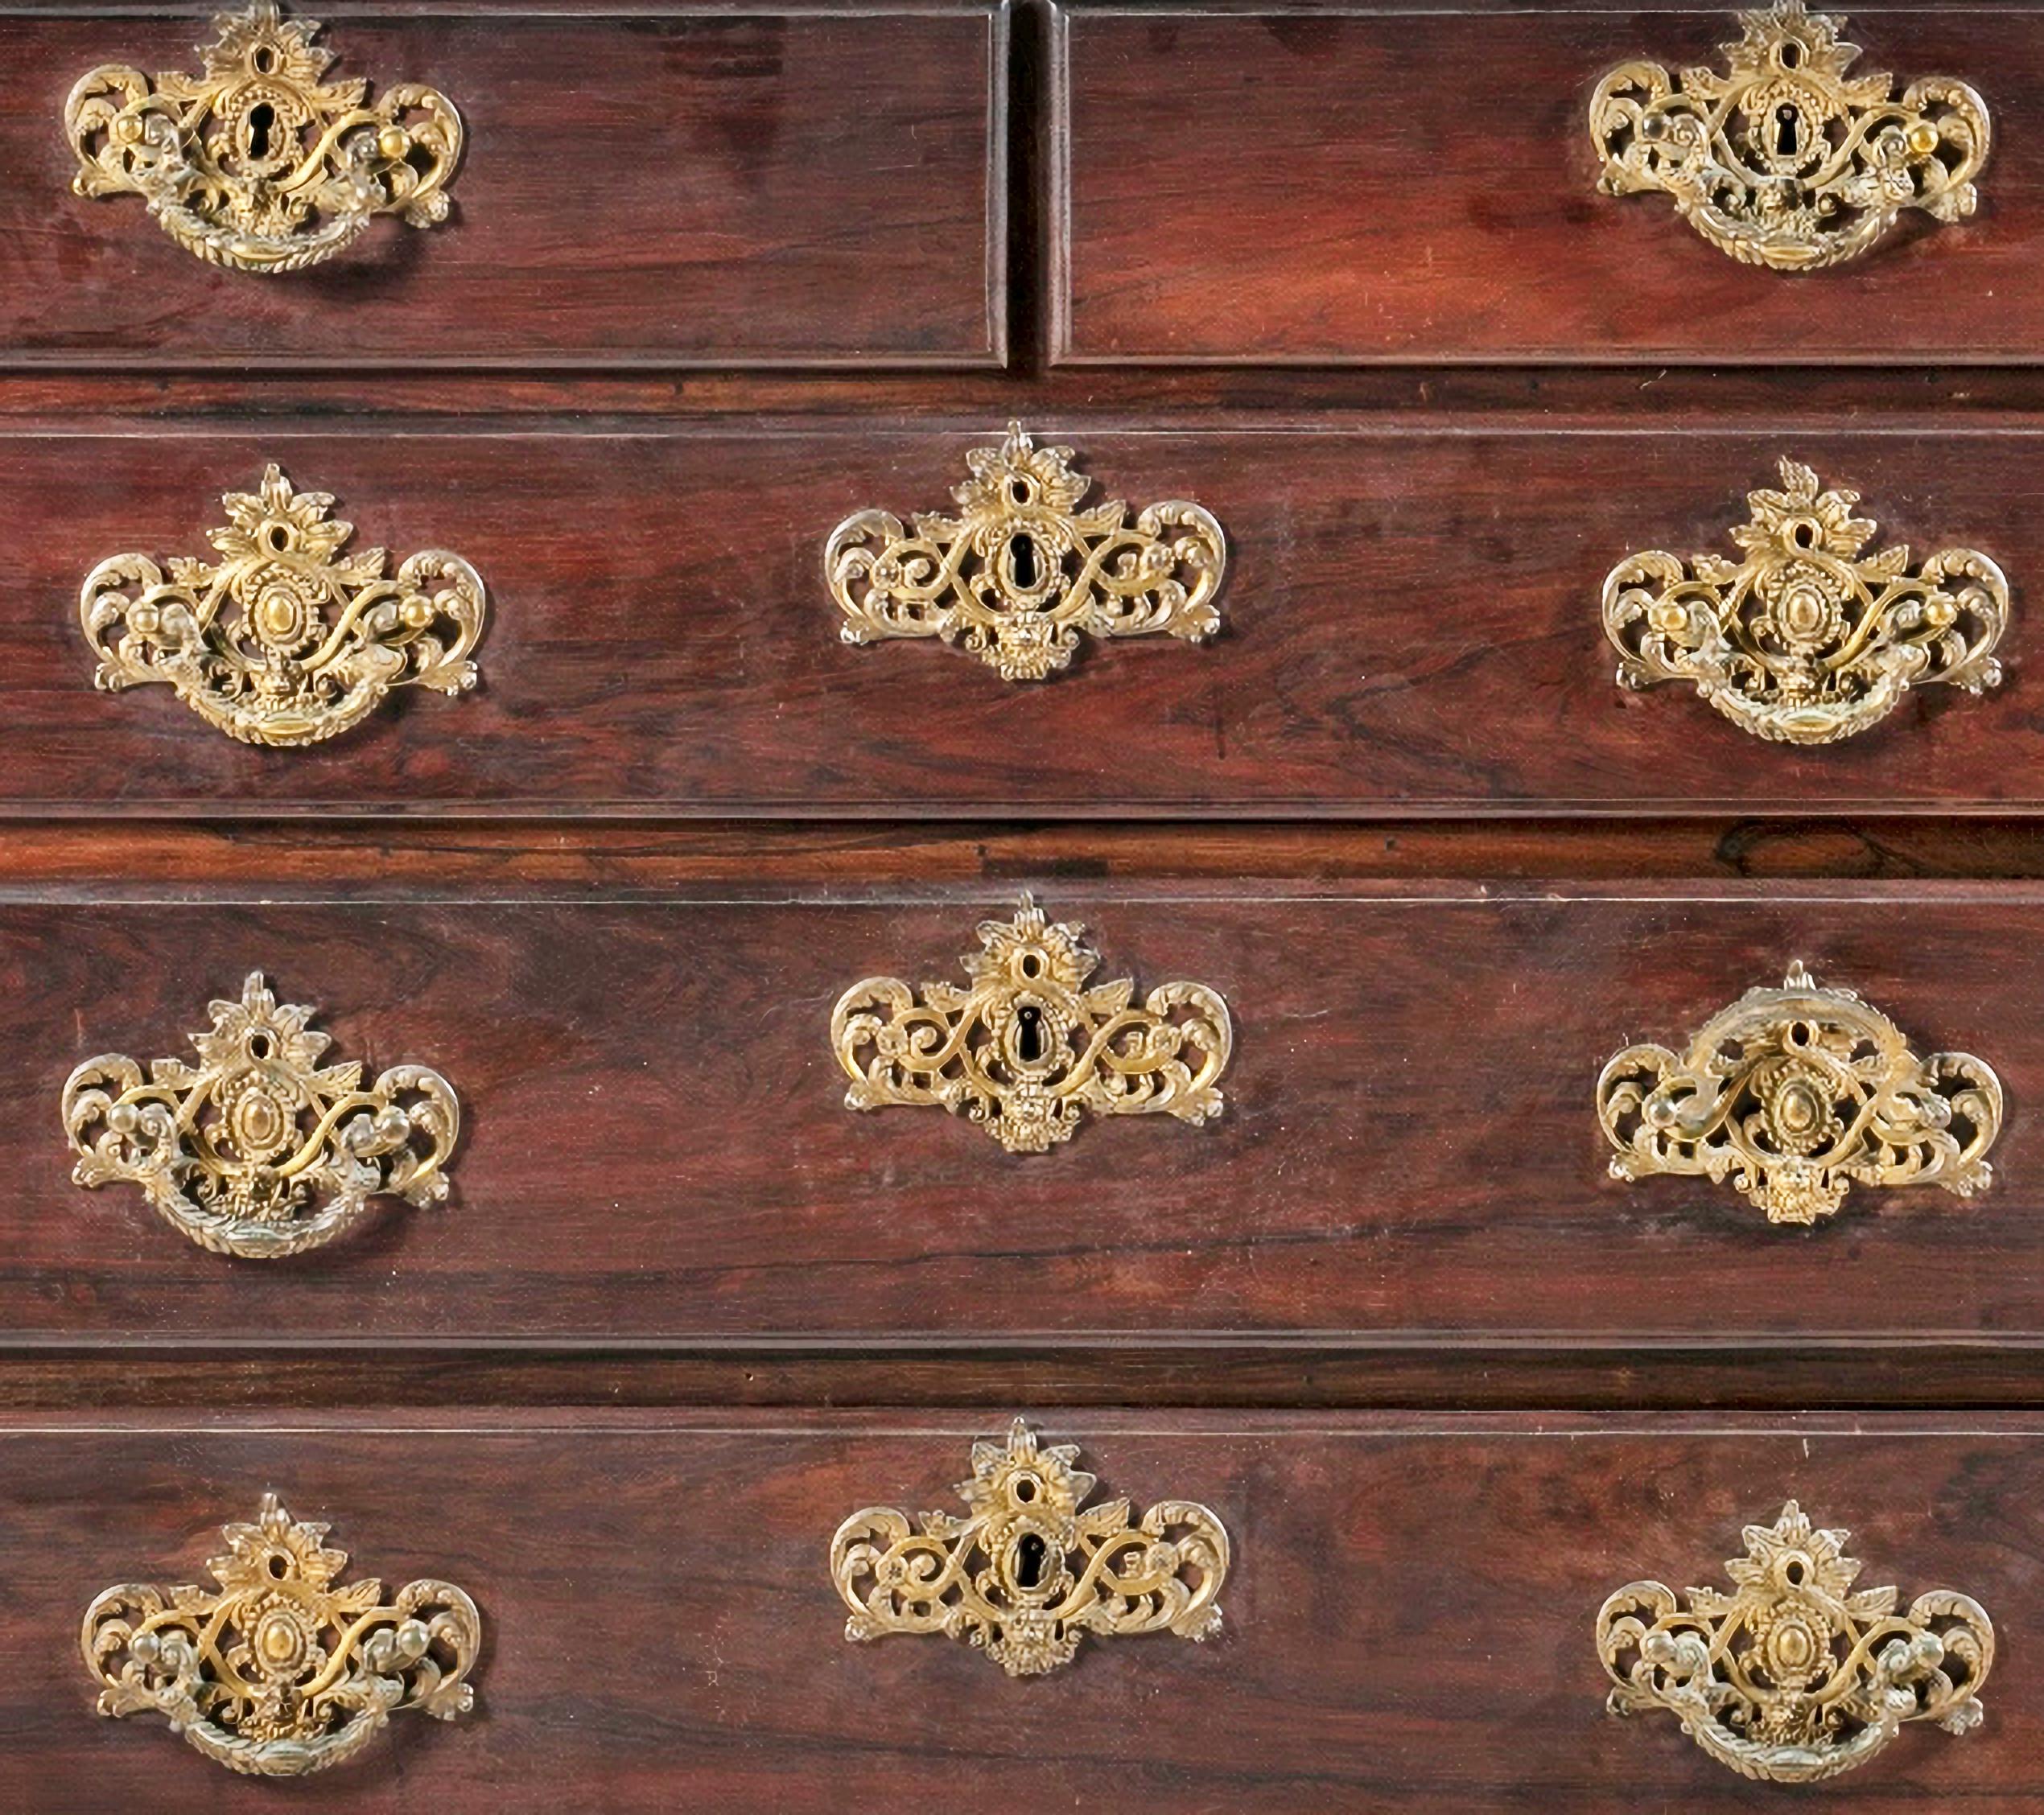 COMMODE portugaise du 18e siècle

Le portugais,
en bois de rose, avec 3 grands tiroirs et deux tiroirs.
Dessus découpé, décoré d'une encoche.
Jupes courtes décorées d'éléments floraux.
Finissant en pieds de tuyaux.
Petits défauts.
Dim. : 104 x 126 x